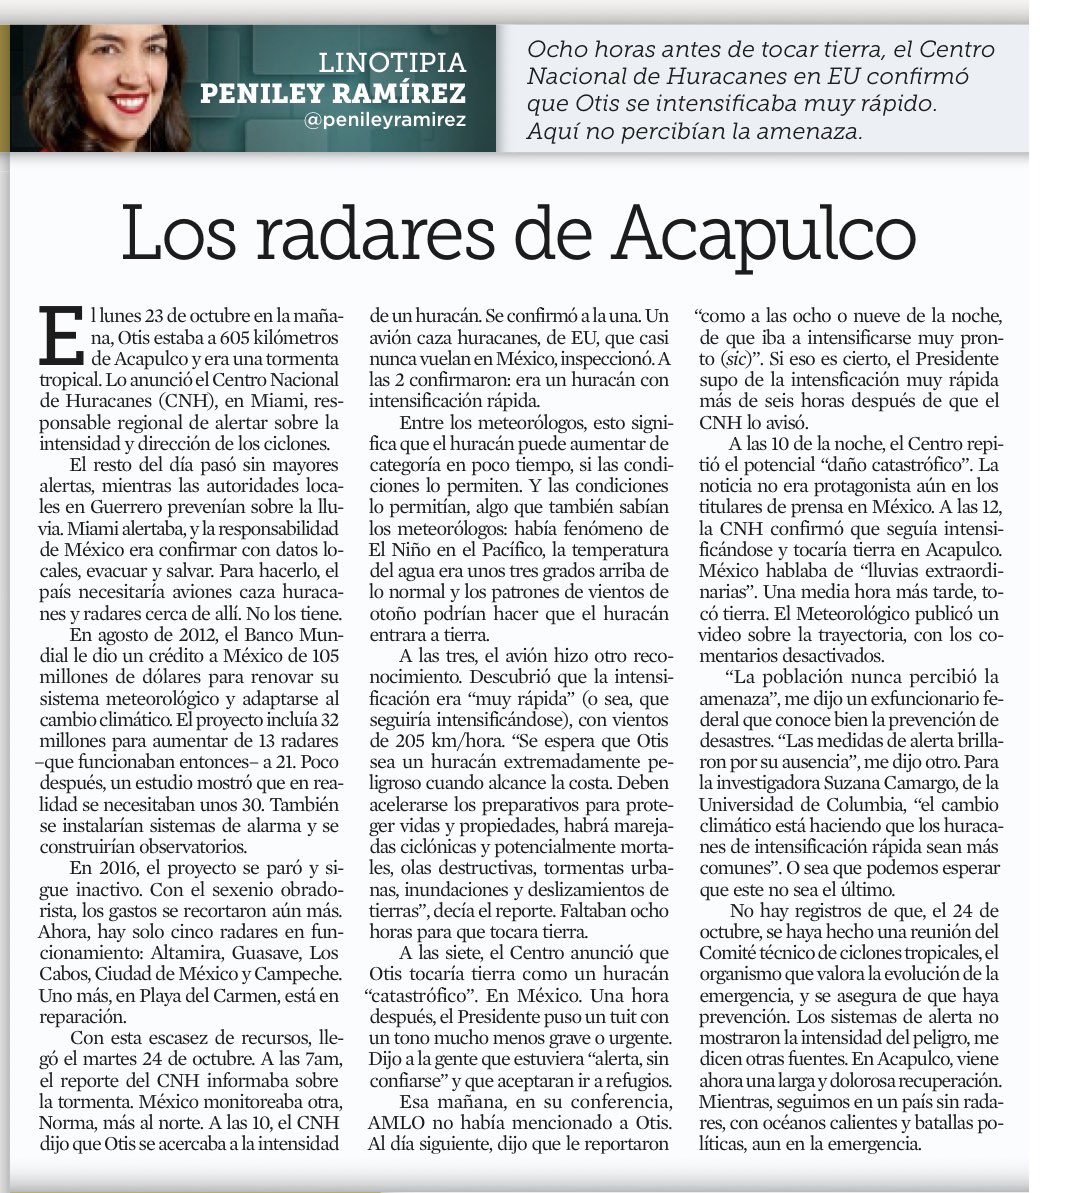 Los radares de Acapulco, mi #Linotipia de hoy en @Reforma, @muralcom y @elnorte. Normalmente solo comparto el link a mi columna, pero creo que hoy es necesario postear también la foto. Pueden leerla, aquí reforma.com/bVxOnr